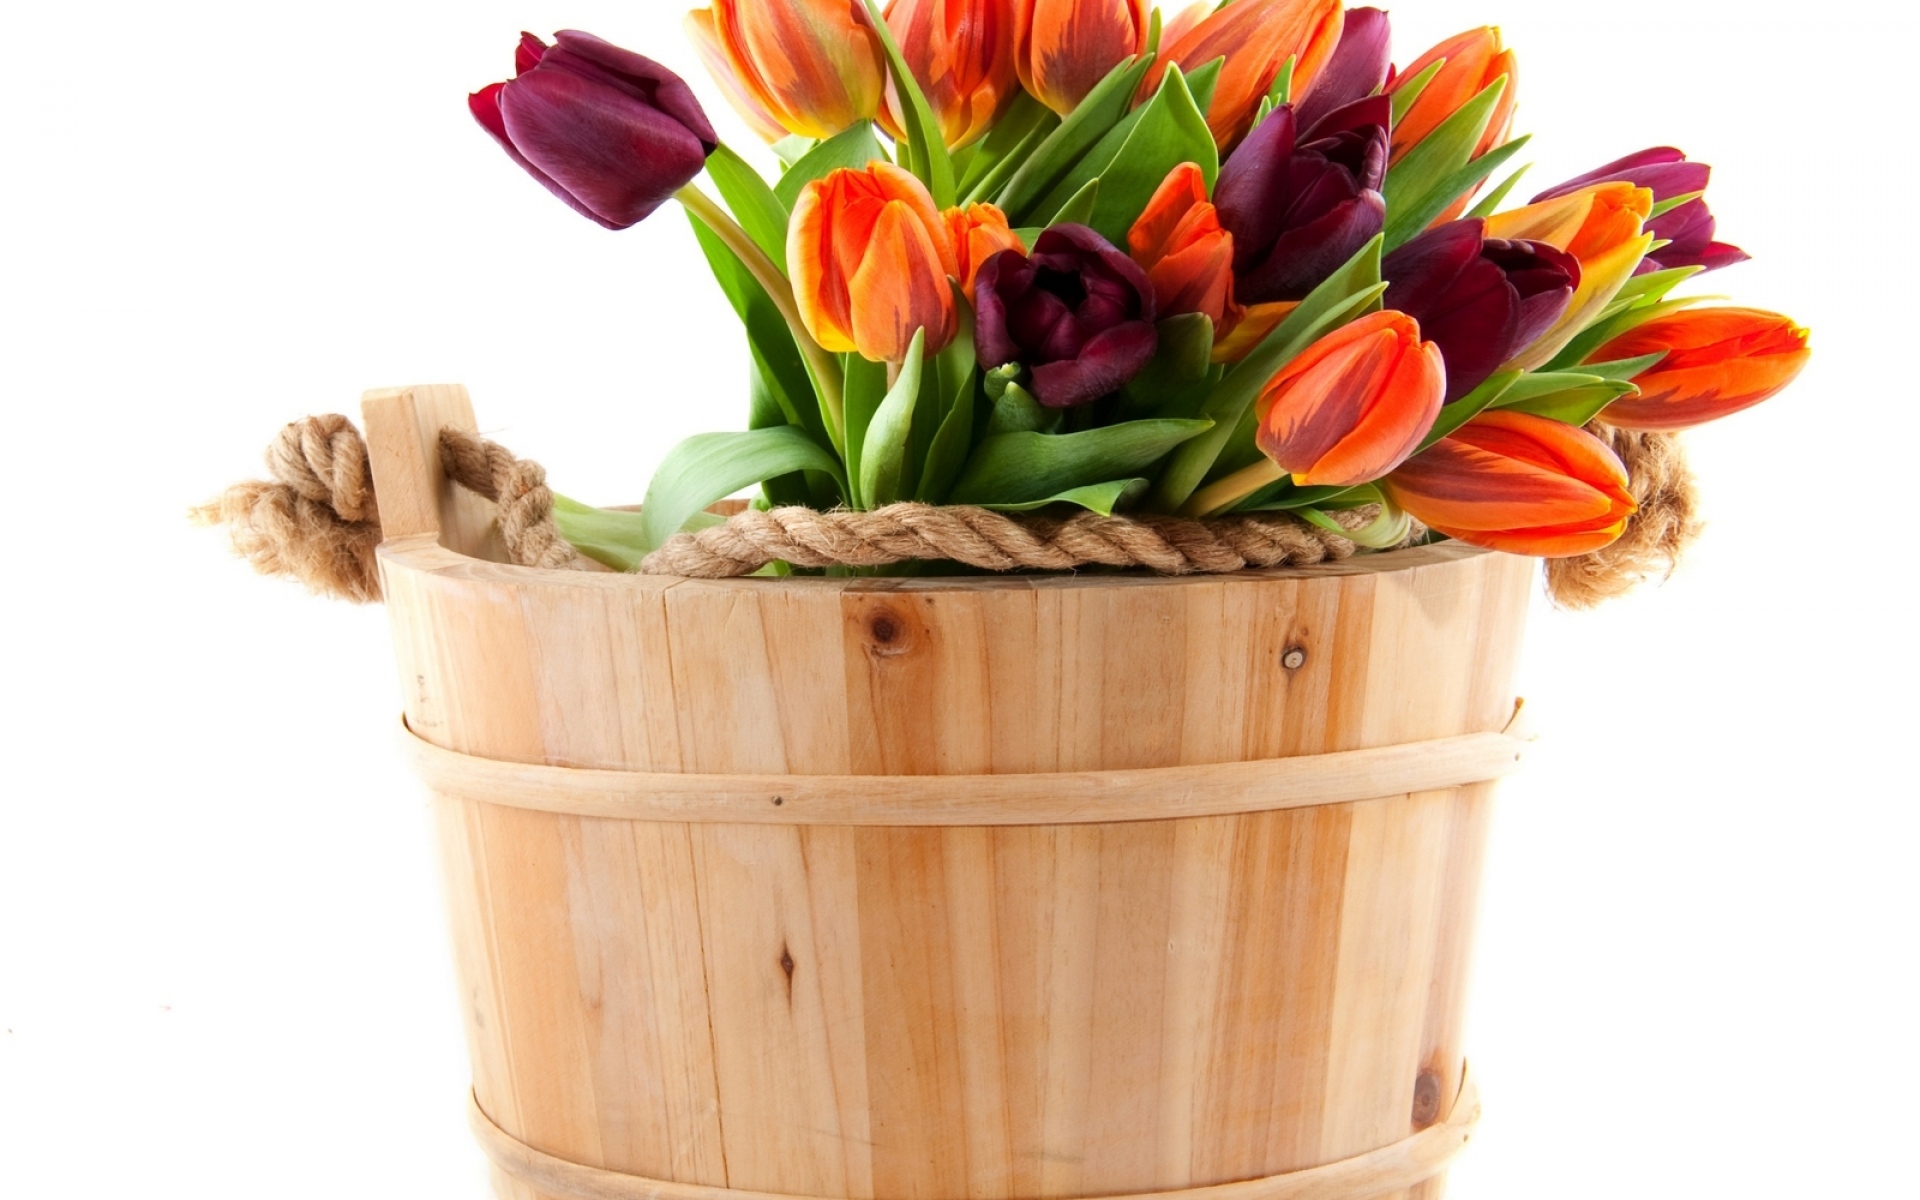 Картинки Тюльпаны, цветы, букет, набор, веревка фото и обои на рабочий стол